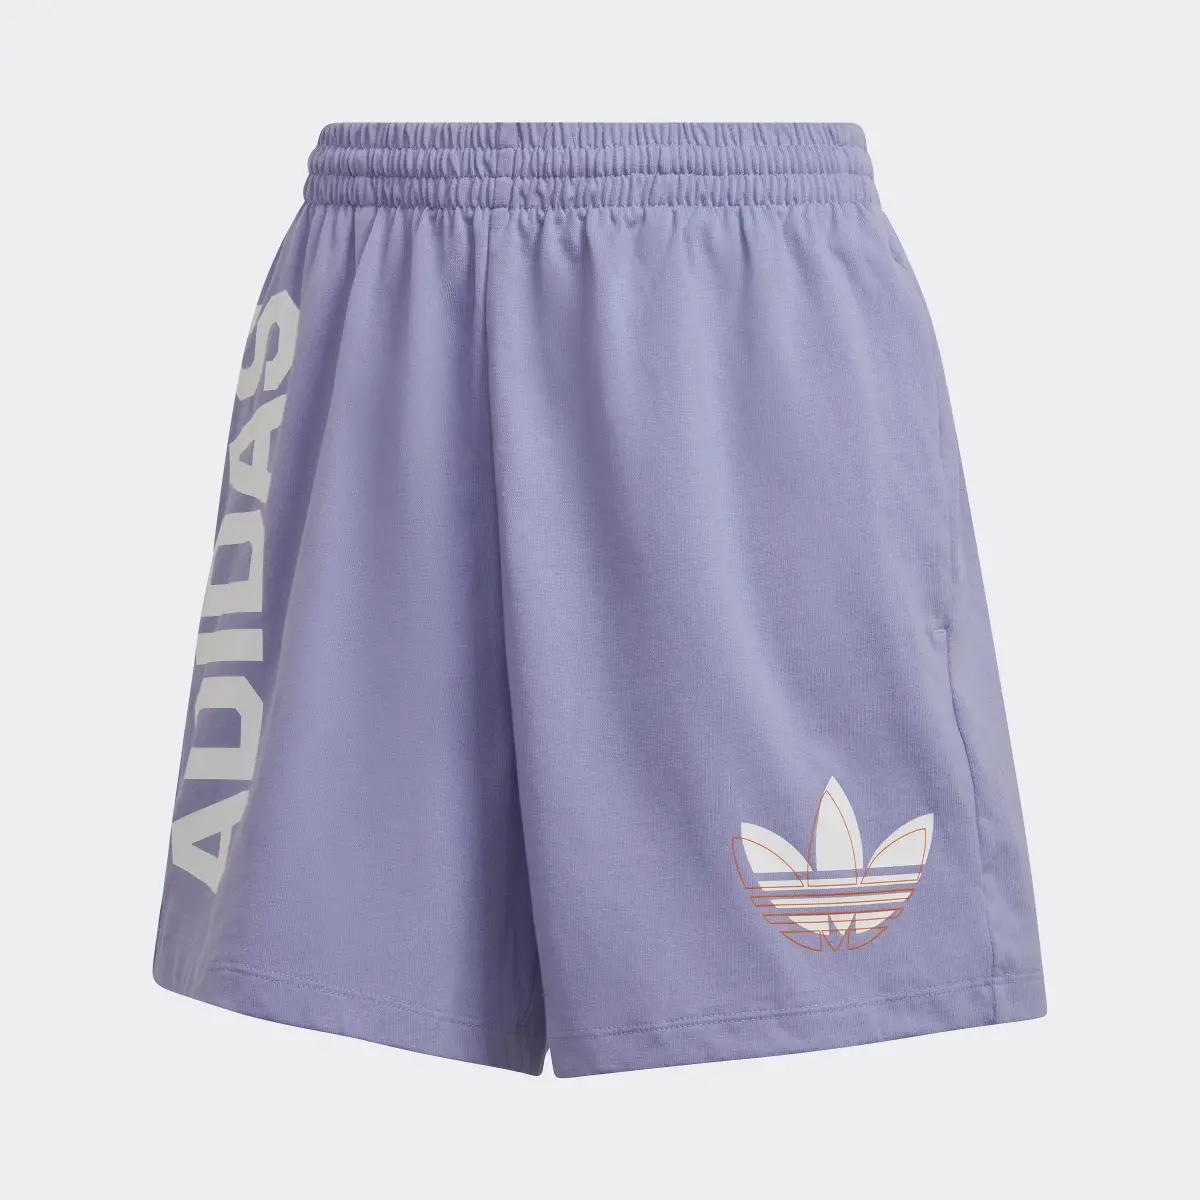 Adidas Streetball Shorts. 1